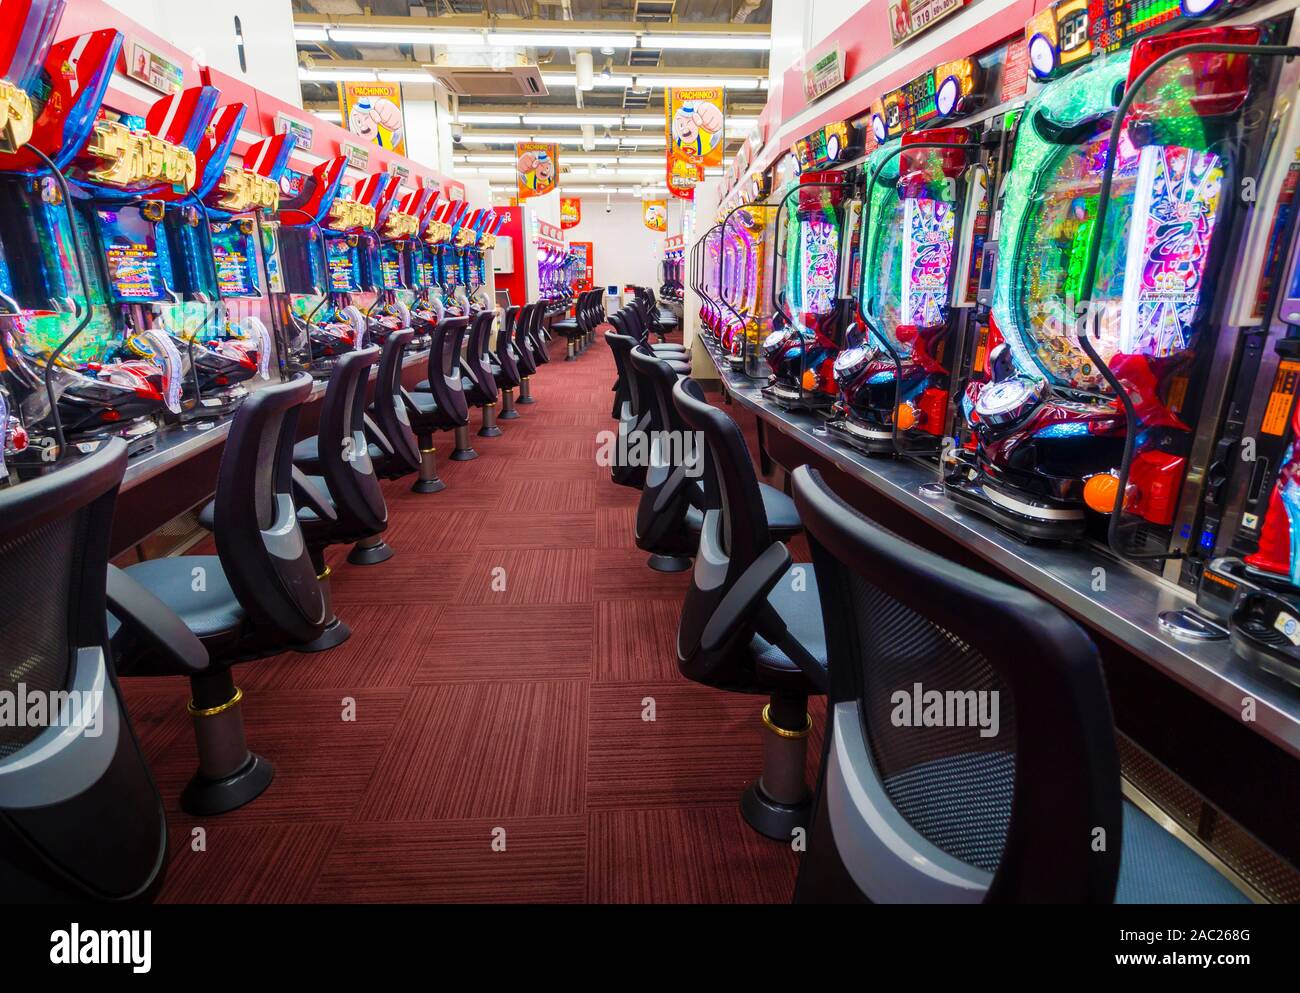 Tokyo, Japan - 12 Okt 2018: Eine Reihe von Pachinko Slot Maschinen innerhalb einer Pachinko Salon in Tokio, Japan. Stockfoto